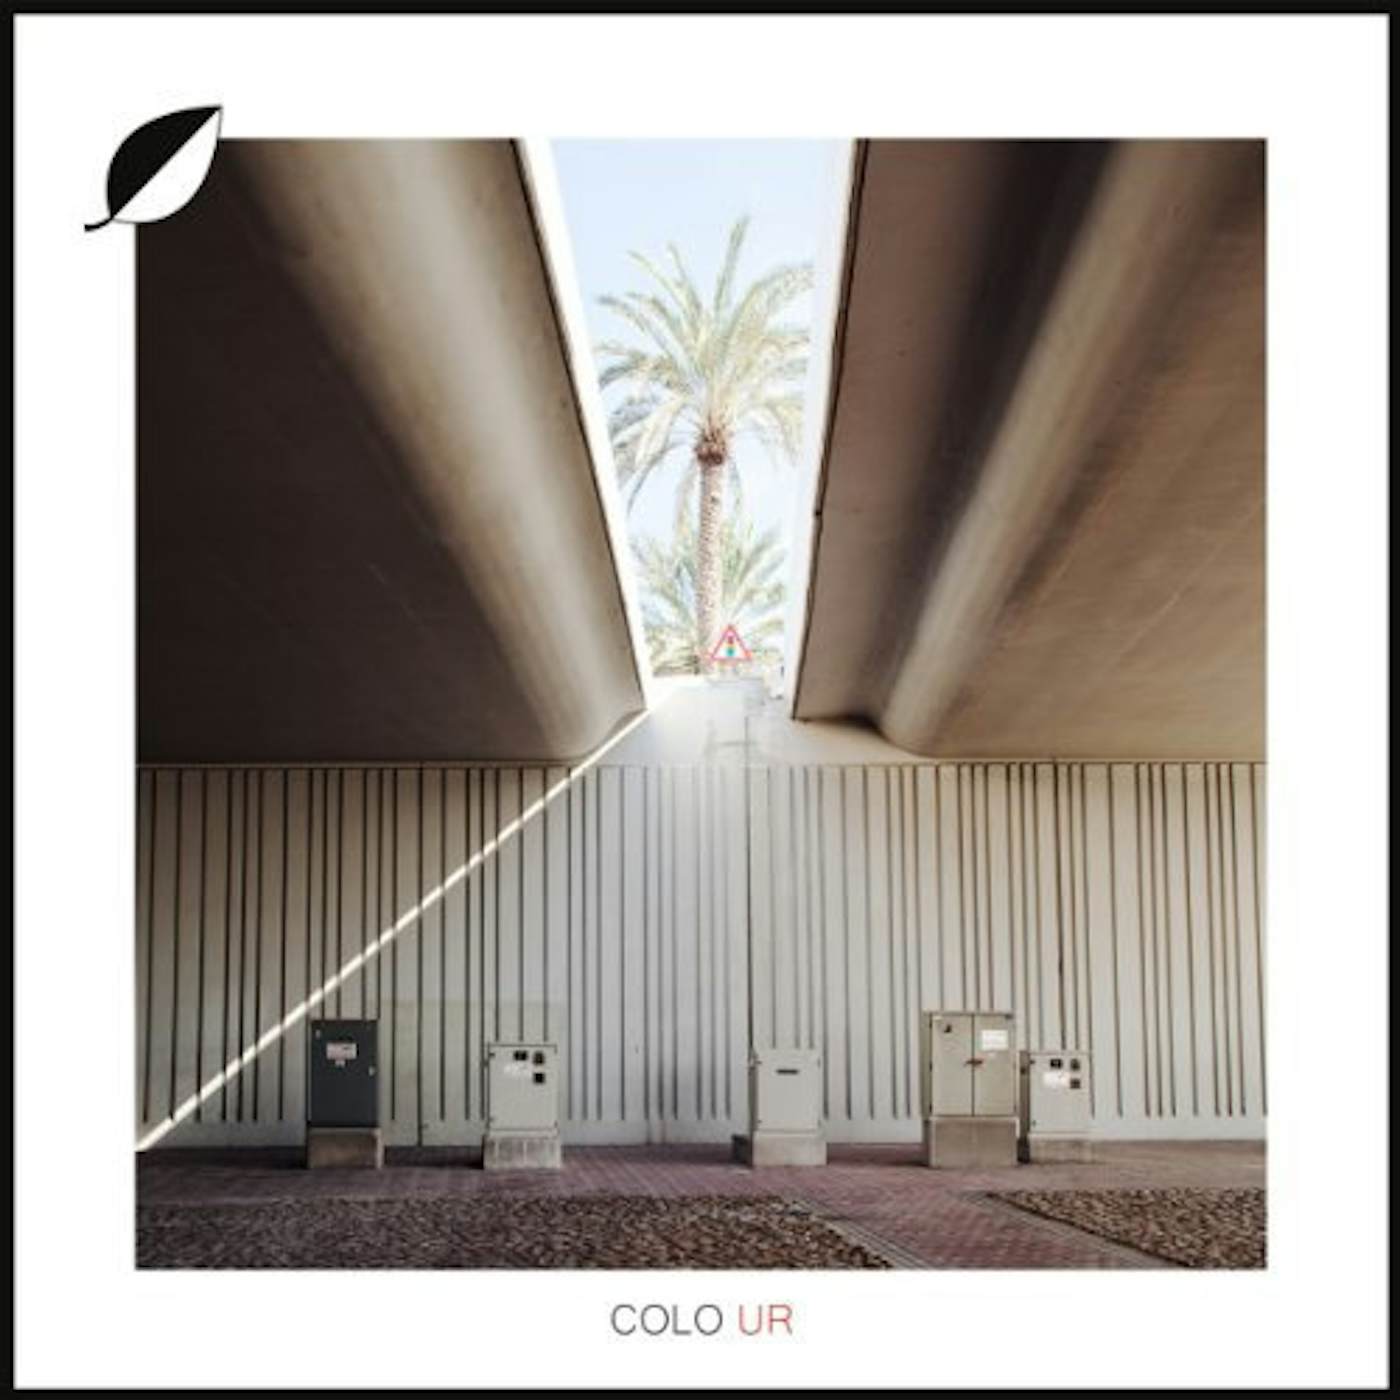 Colo UR Vinyl Record - w/CD